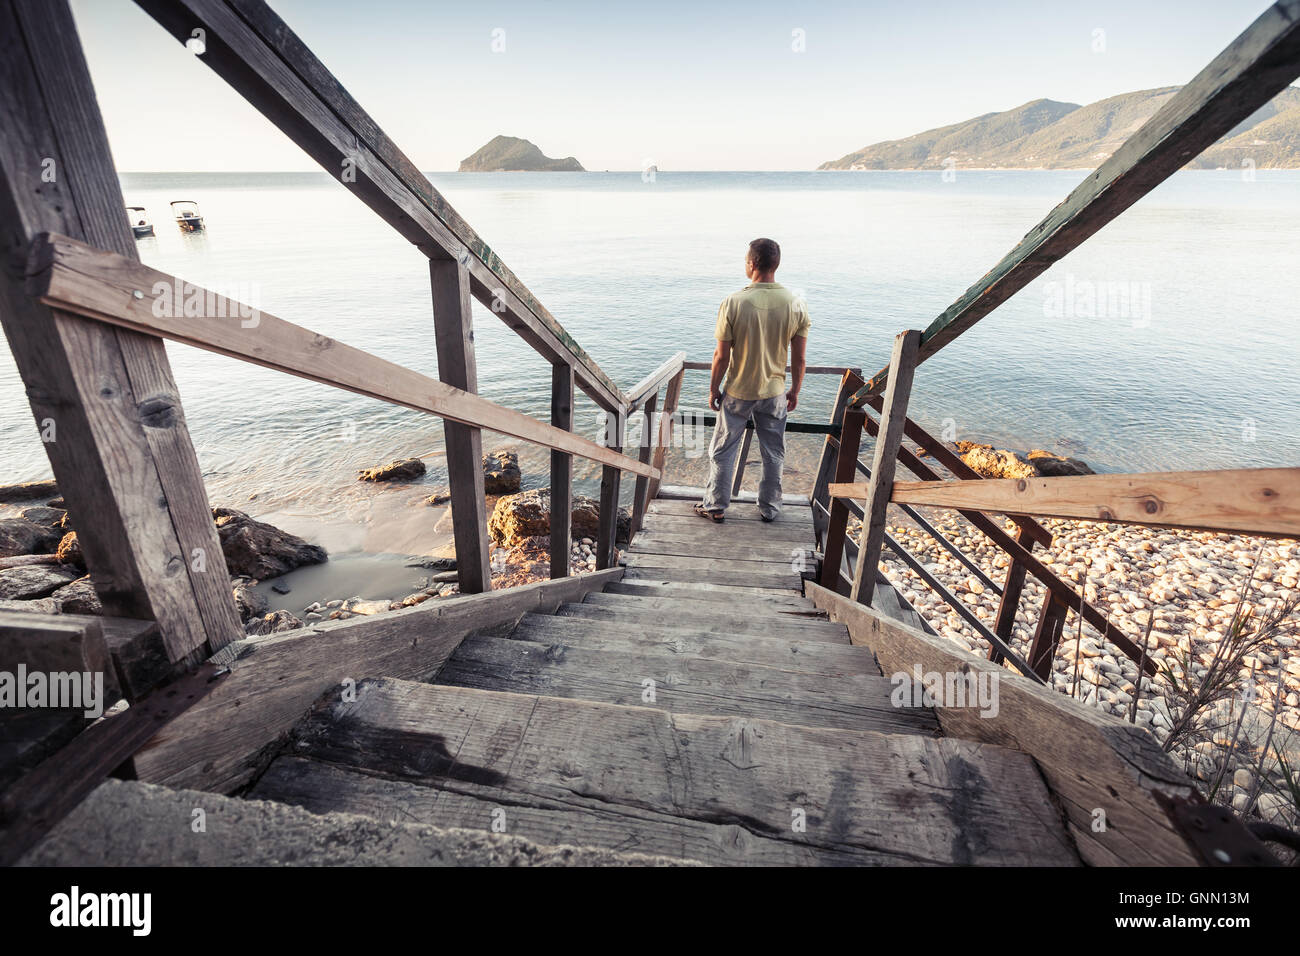 Jeune homme se dresse sur l'ancien escalier en bois qui descend jusqu'à la côte de la mer, le matin Banque D'Images